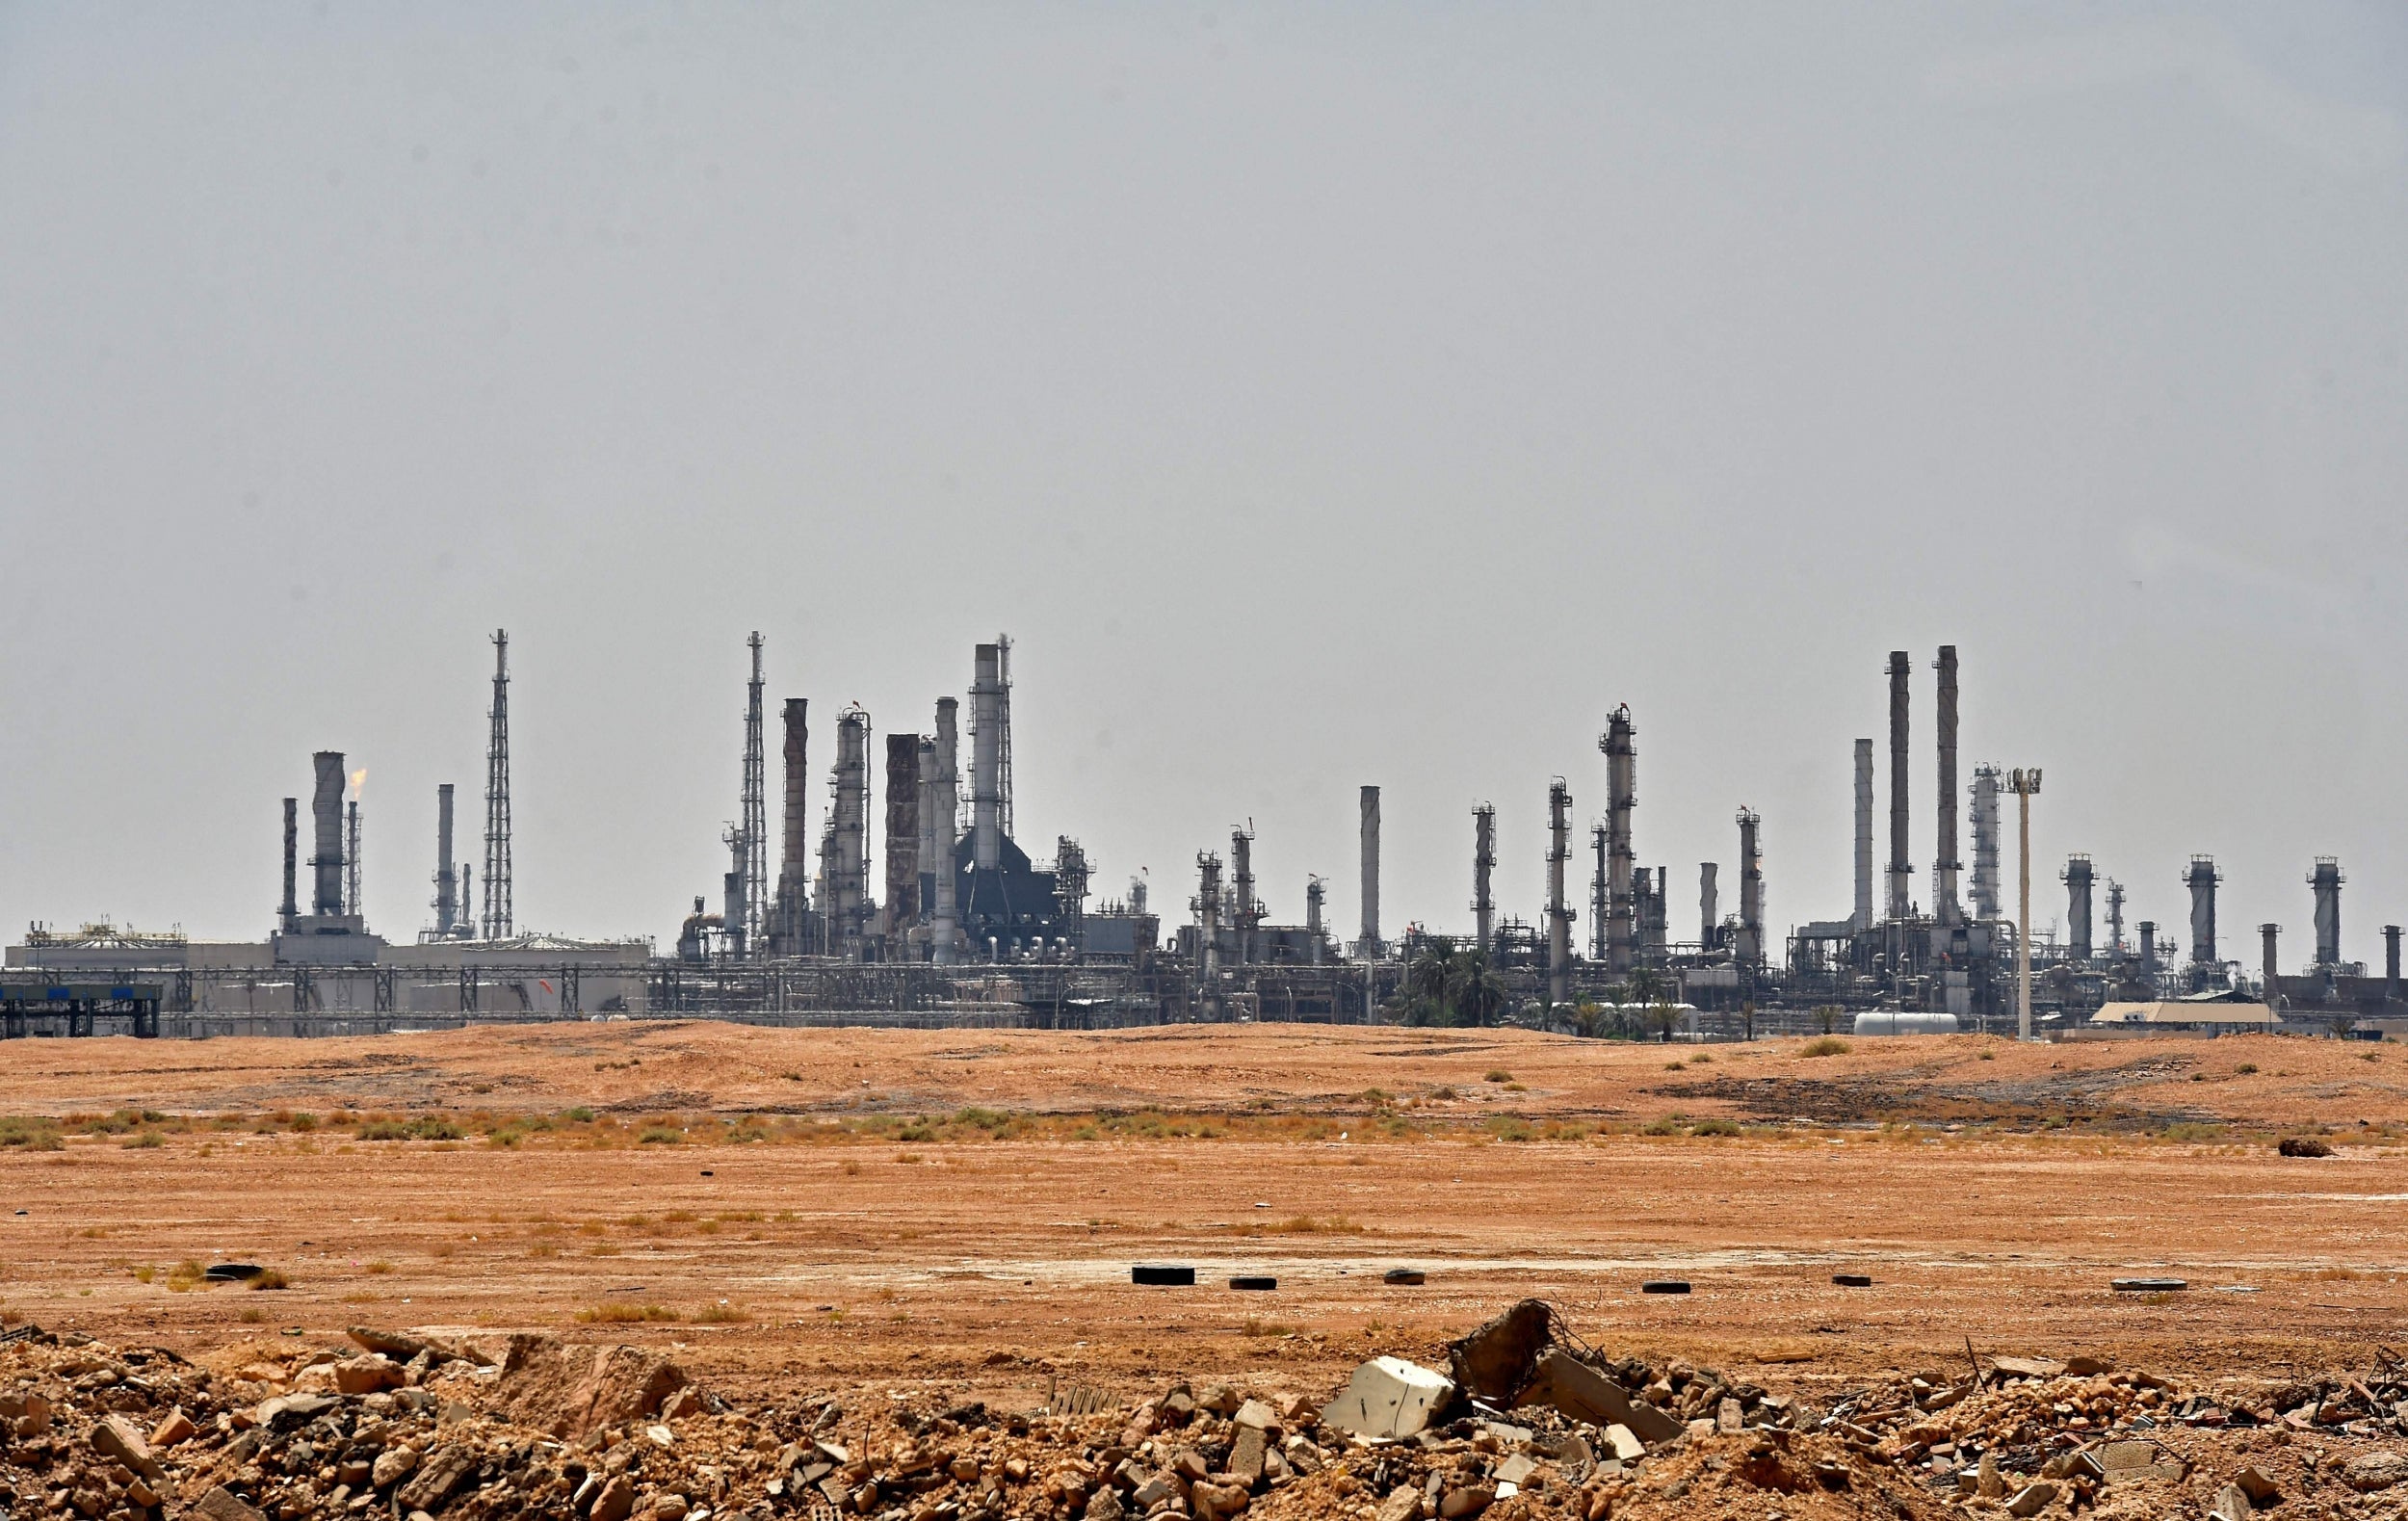 An Aramco oil facility near al-Khurj area, just south of the Saudi capital Riyadh